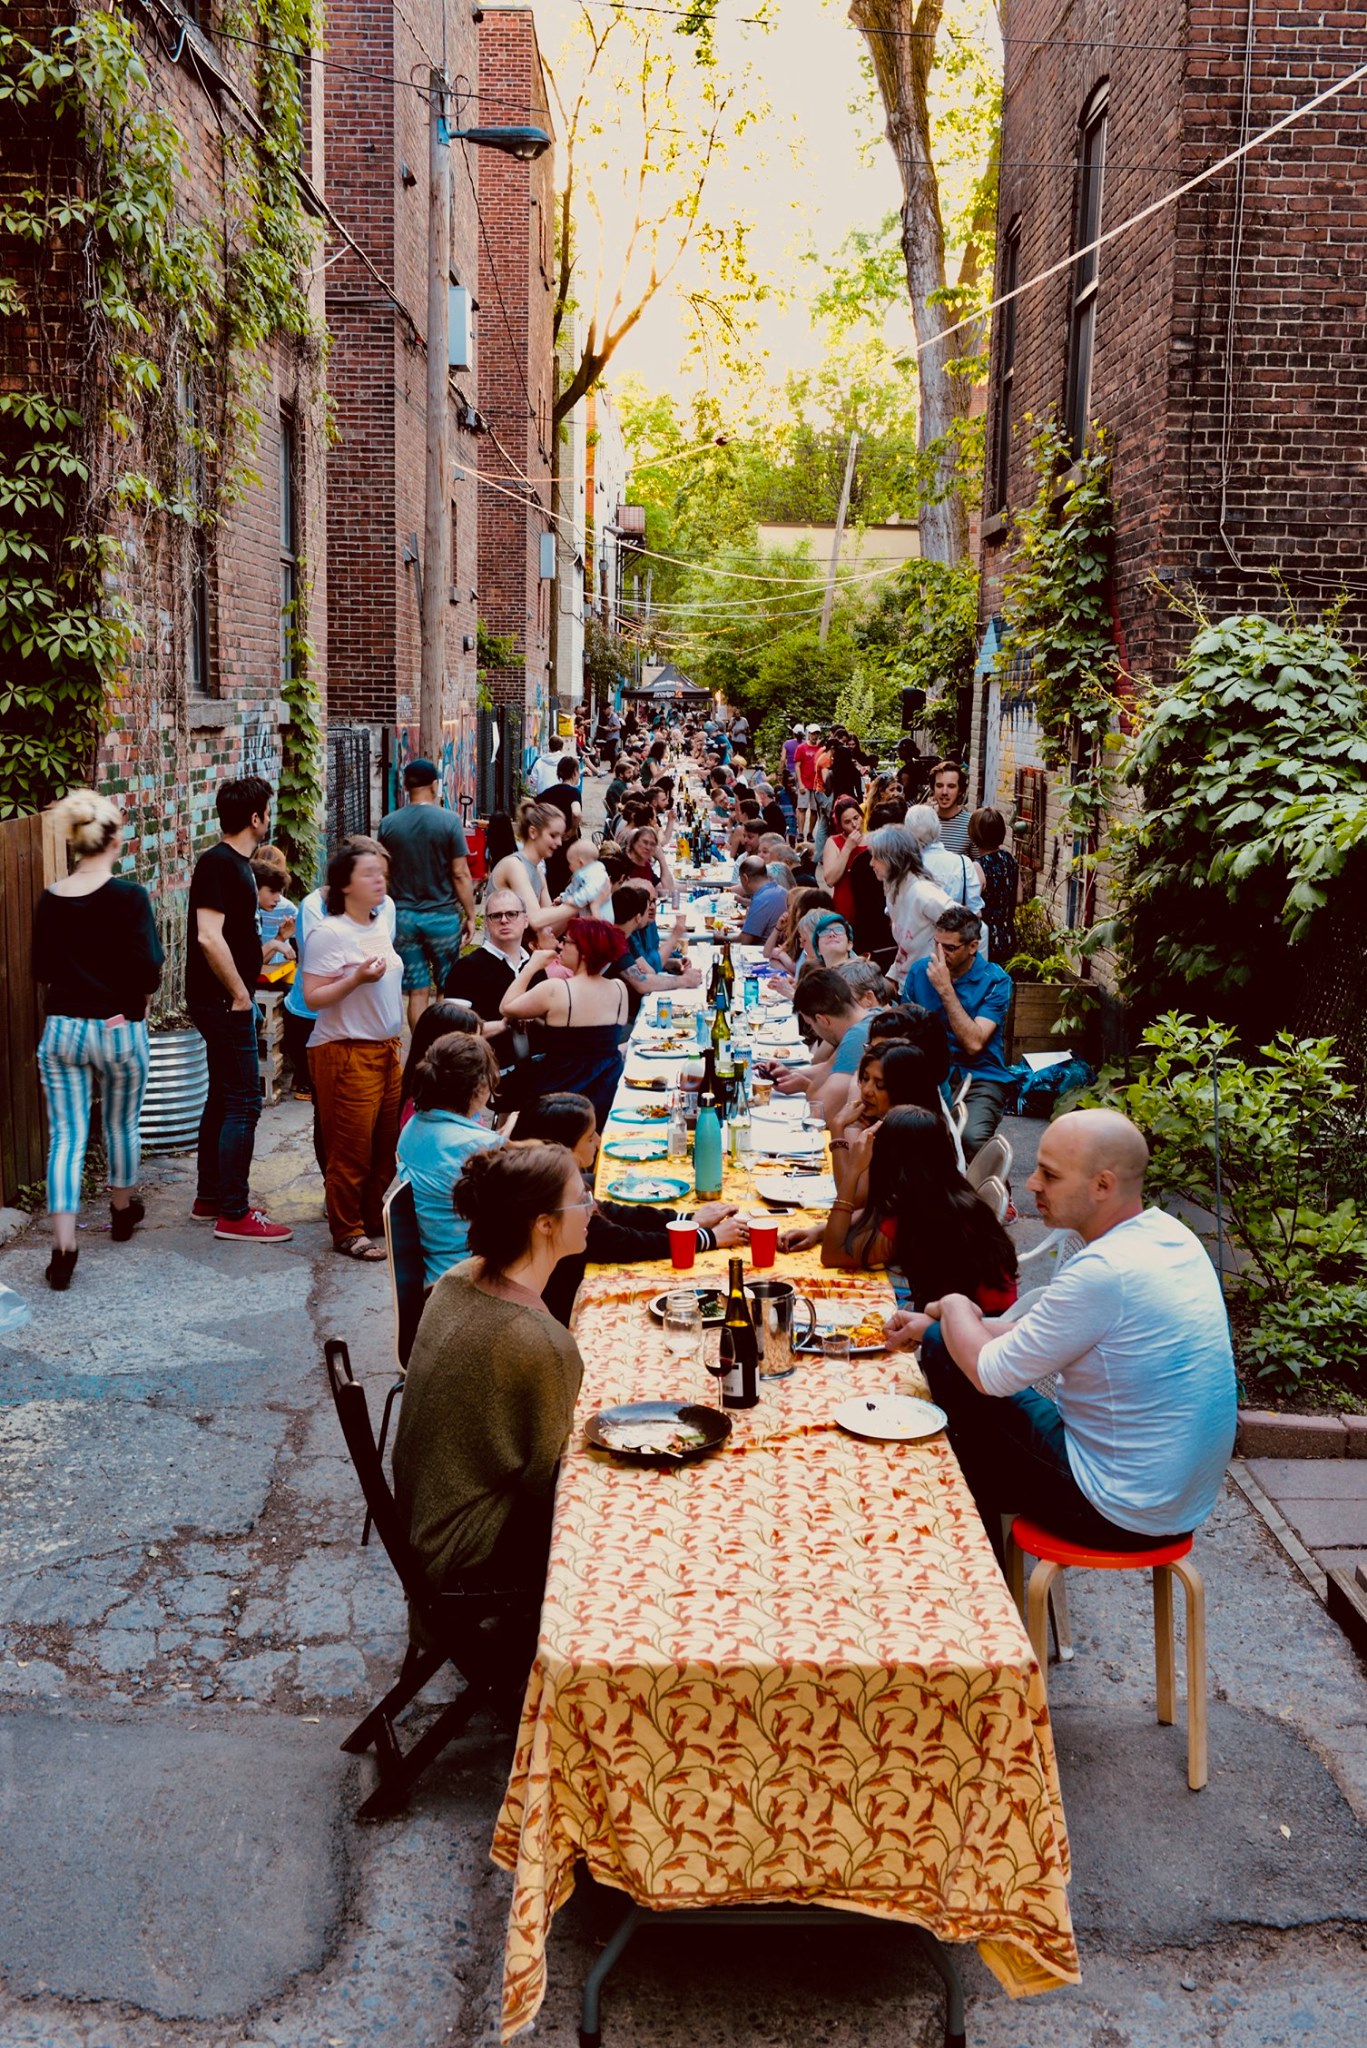 Photo couleur d’une longue tablée festive dans une ruelle remplie de convives assis et debout qui discutent, mangent et boivent.